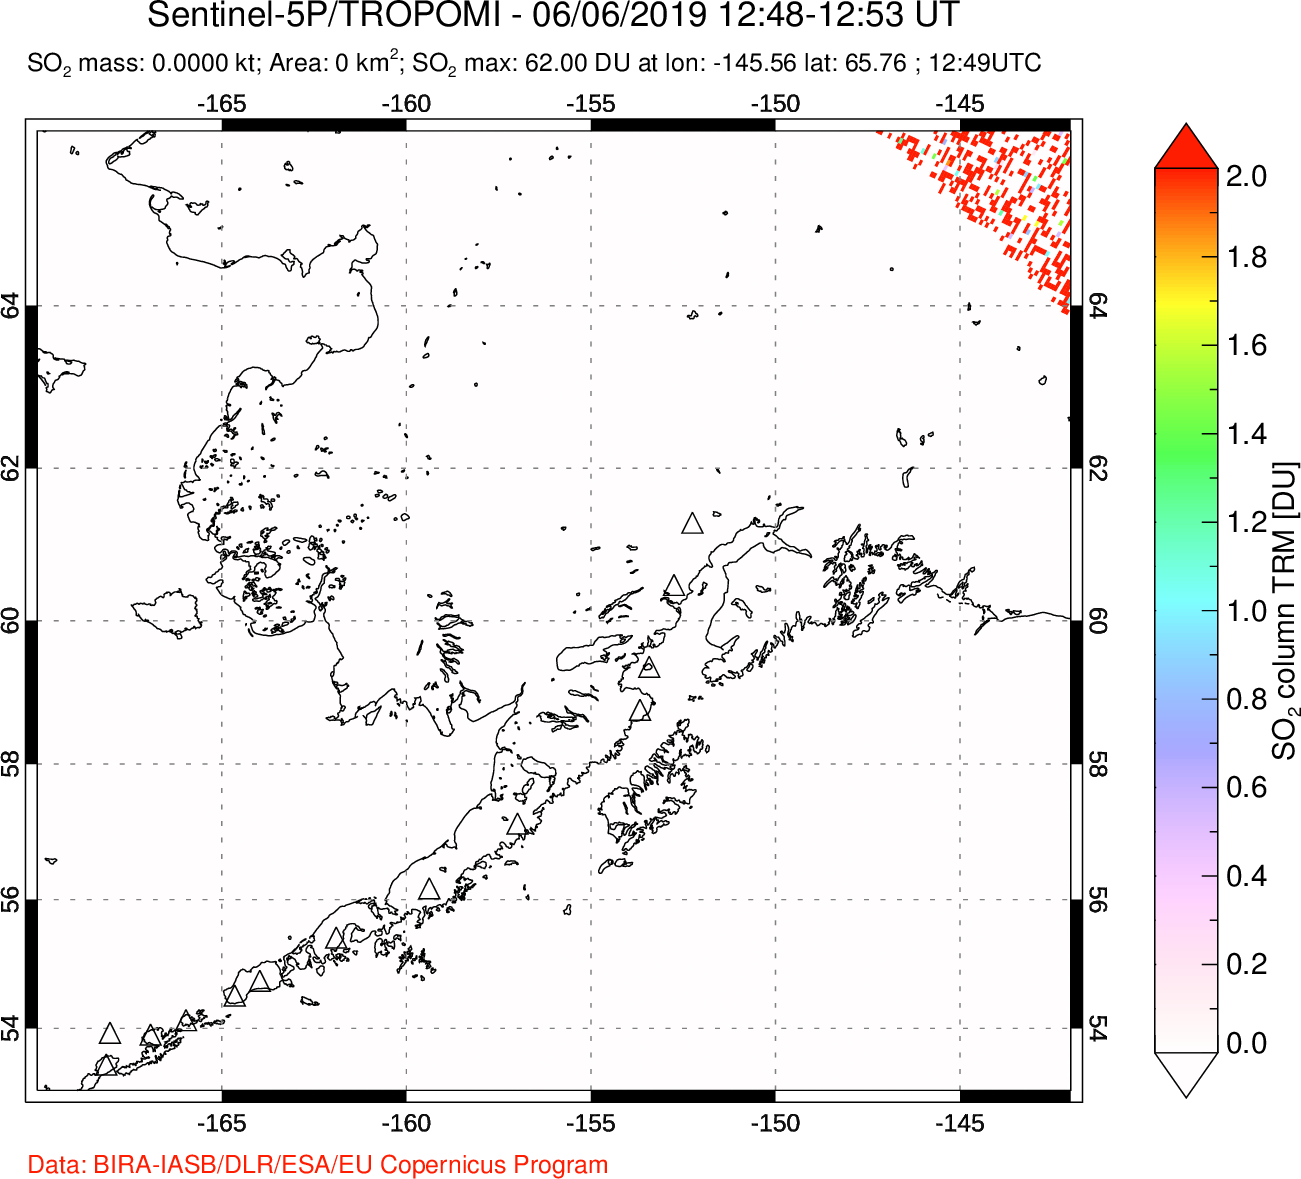 A sulfur dioxide image over Alaska, USA on Jun 06, 2019.